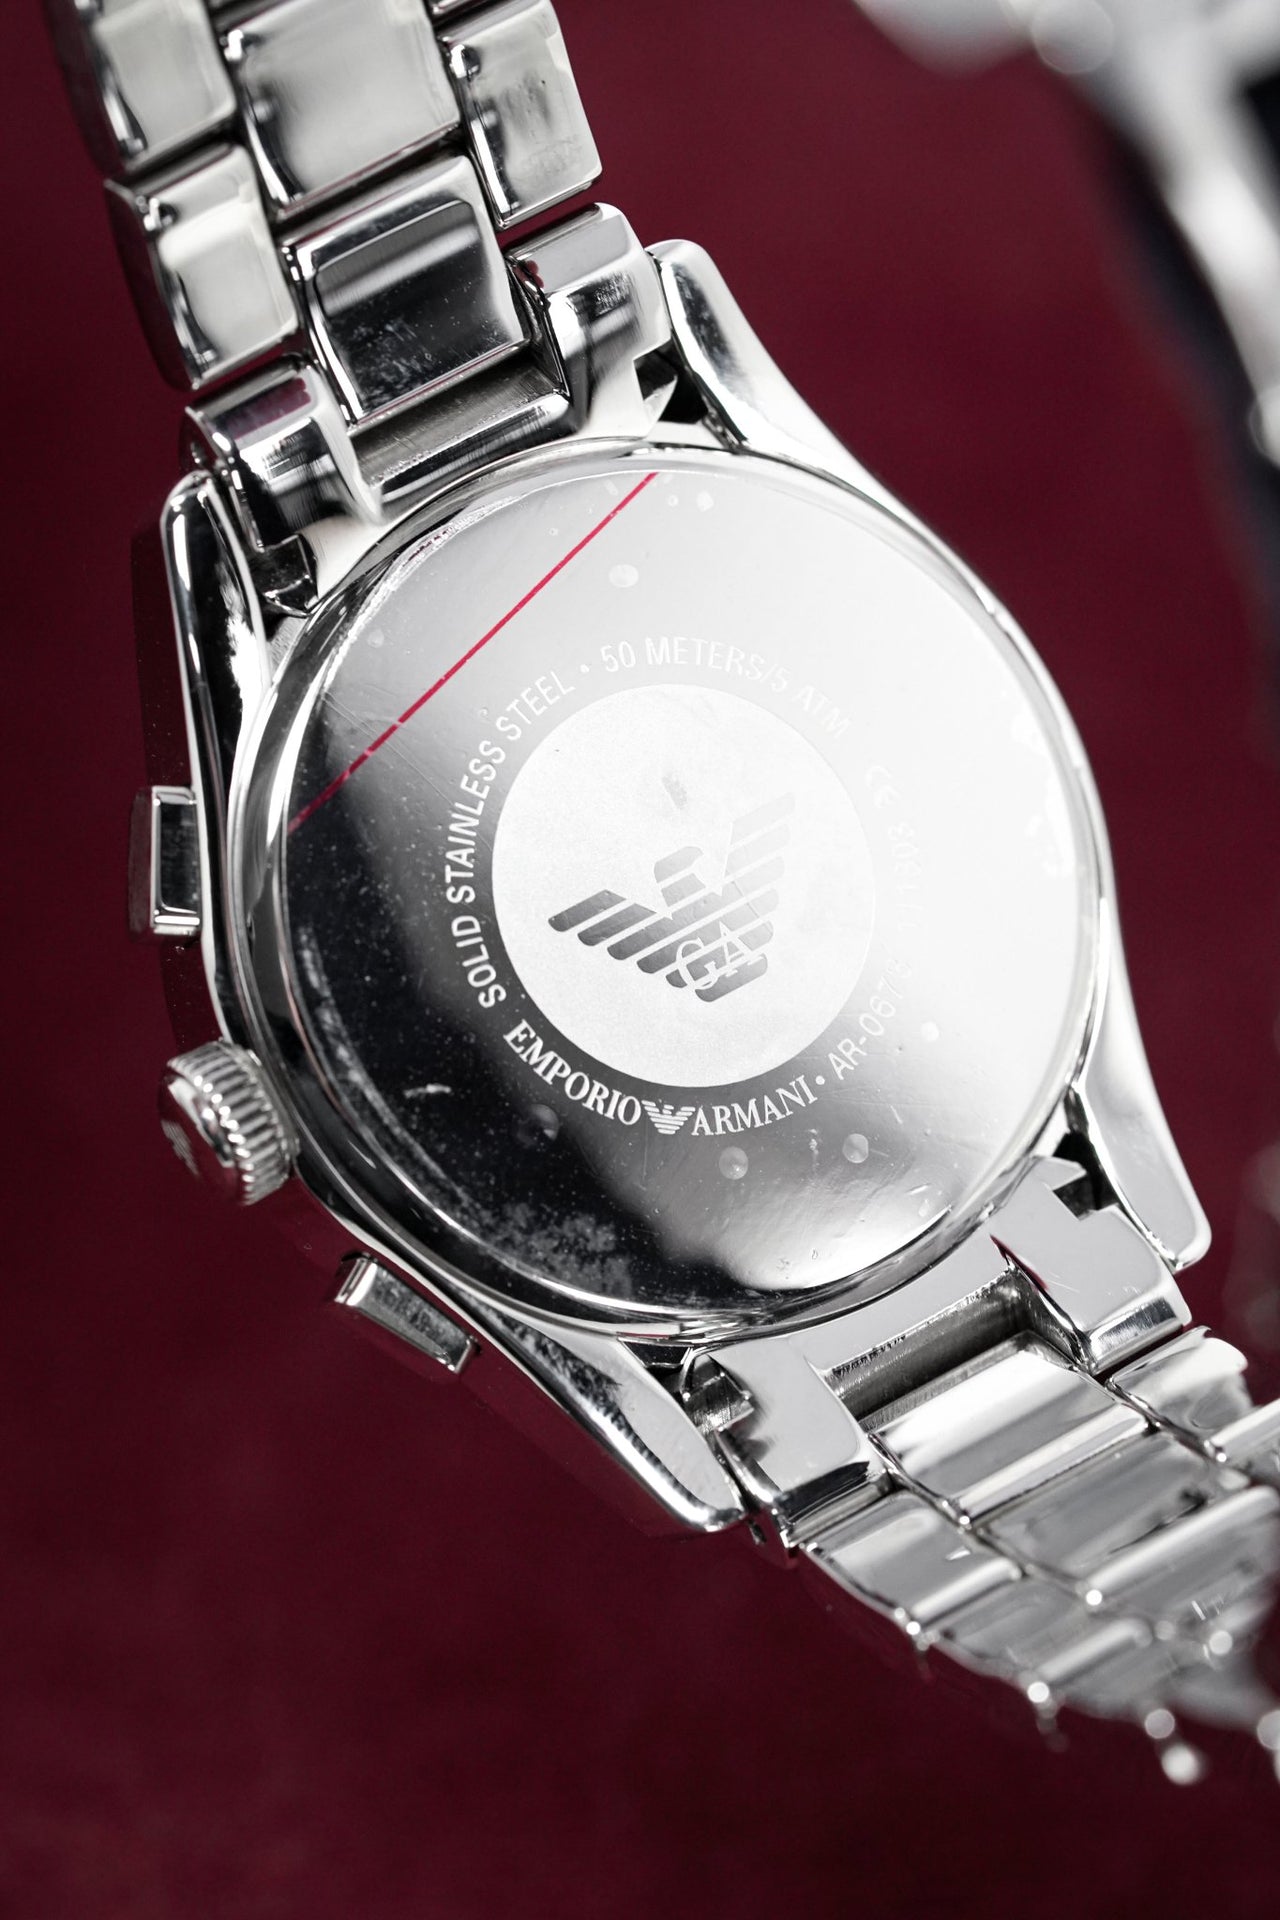 Emporio Armani Men's Valente Chronograph Watch Steel AR0673